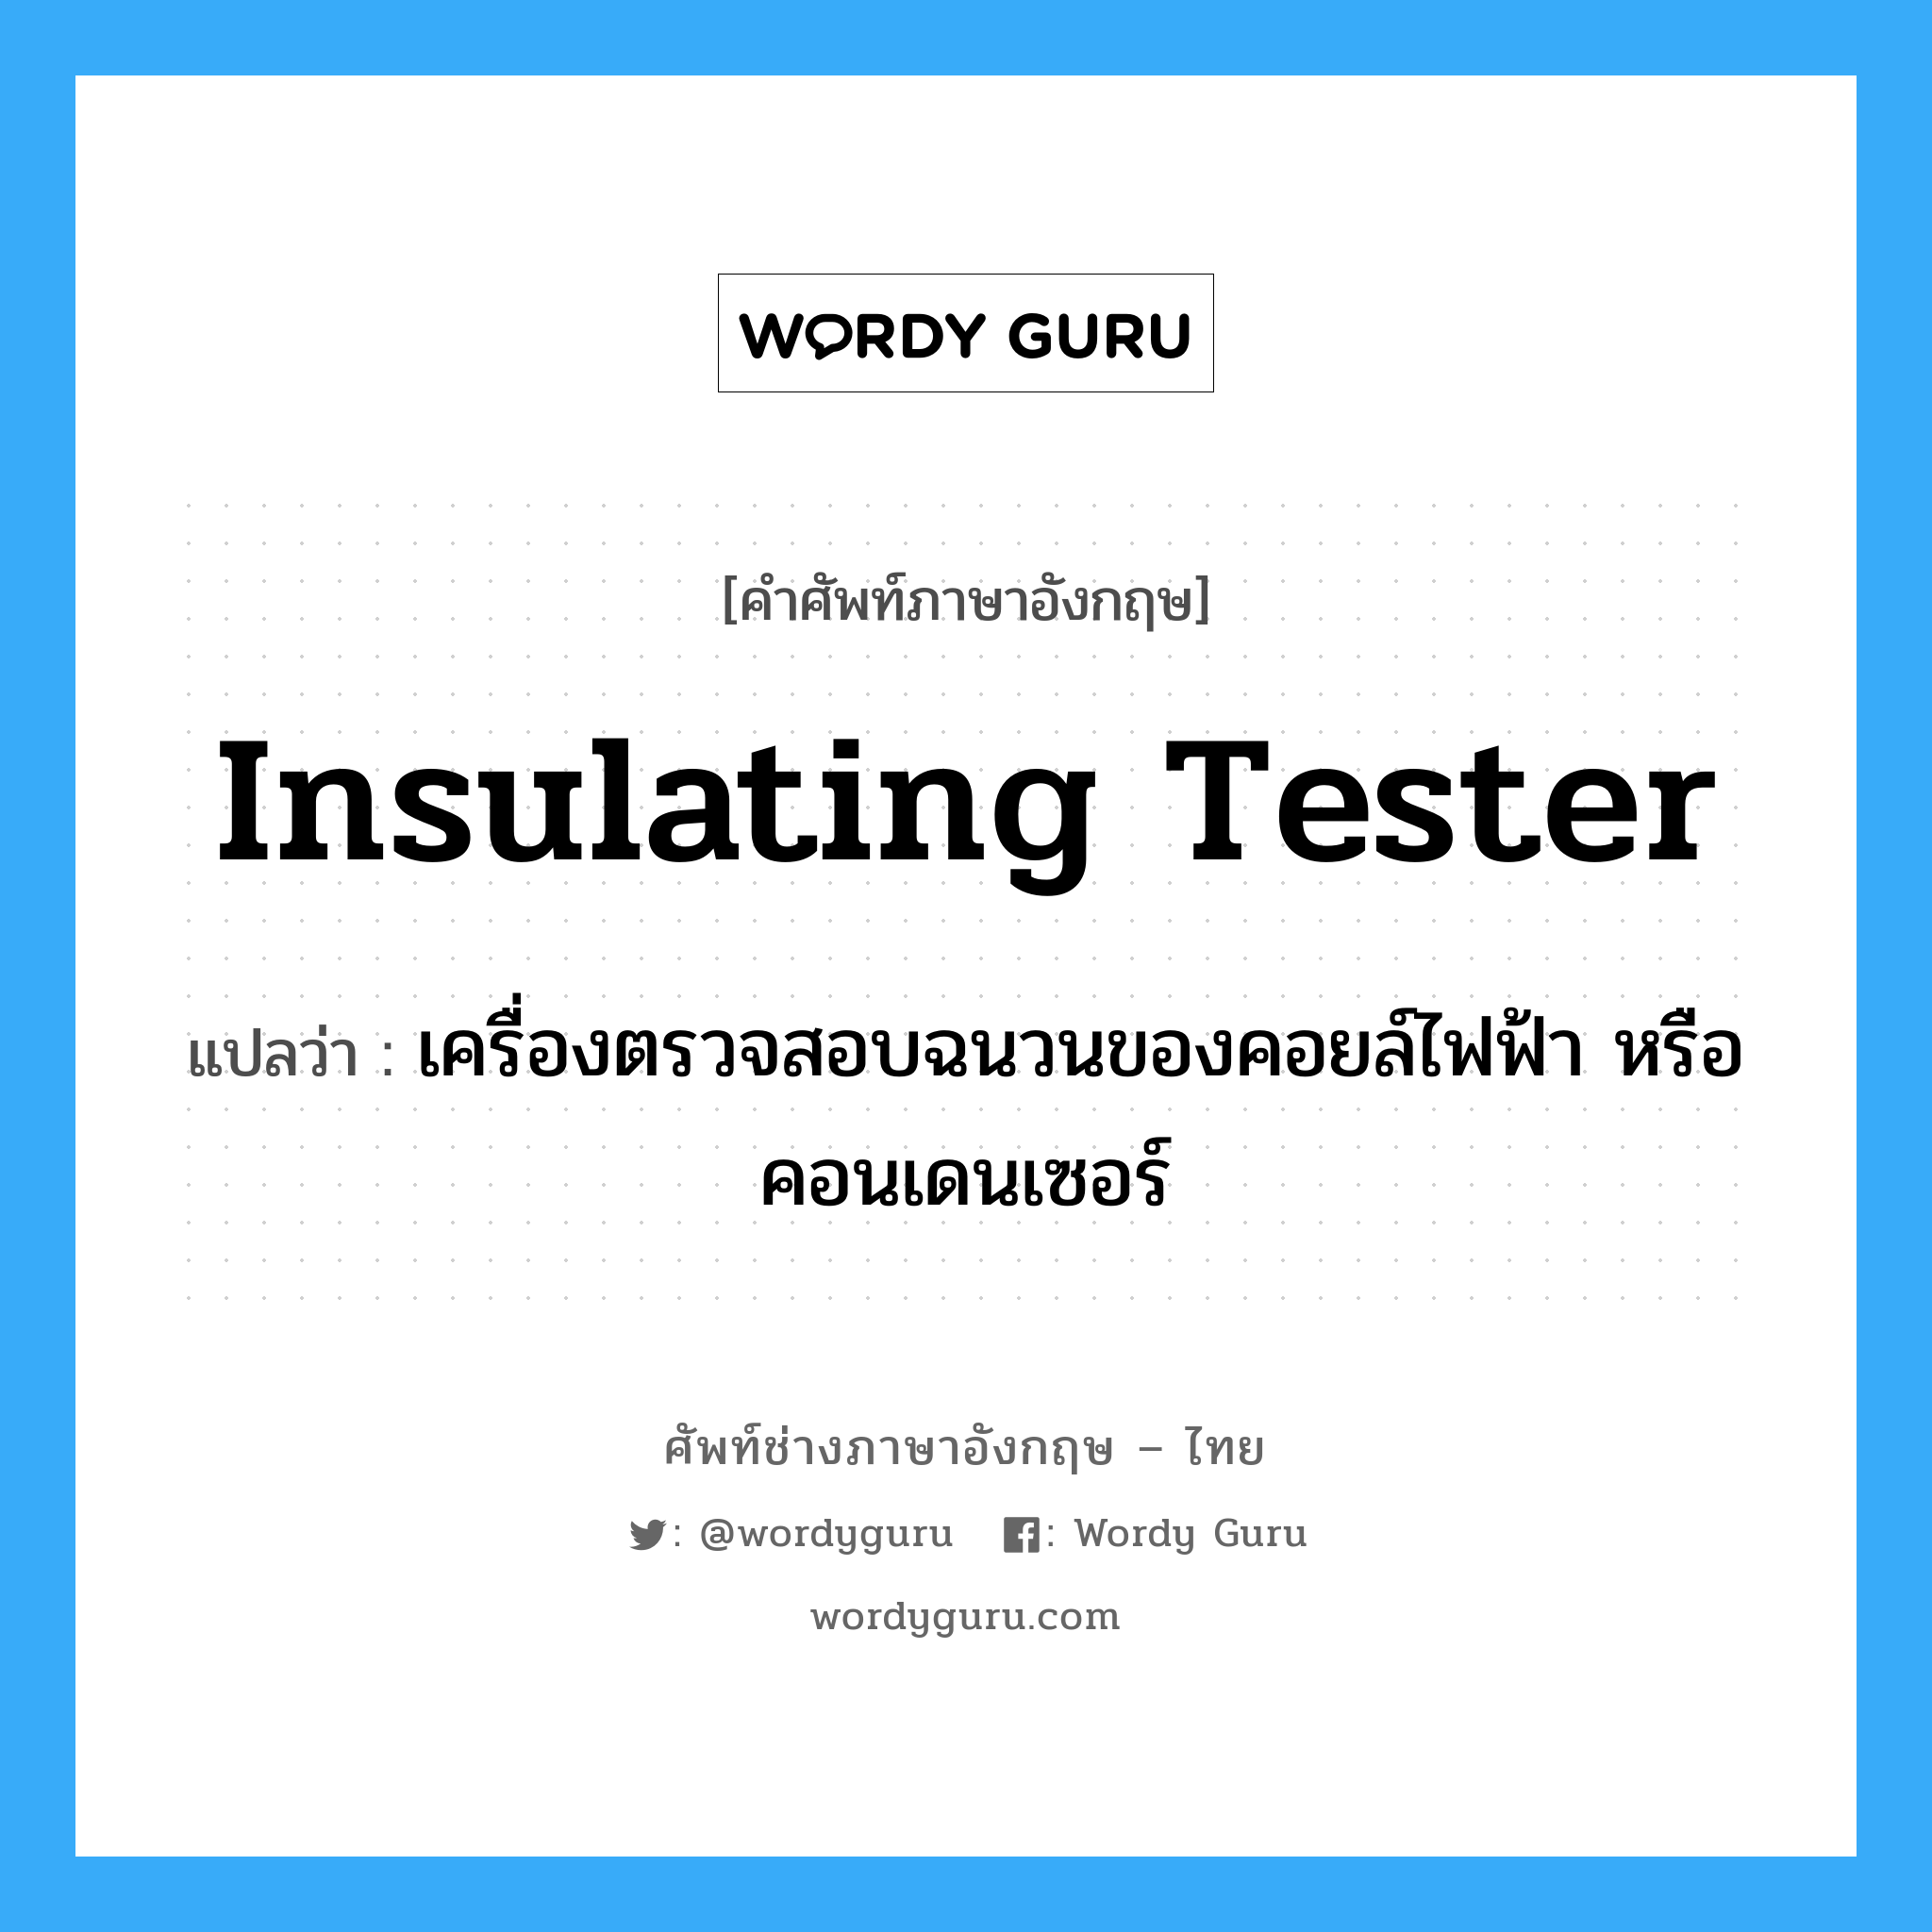 insulating tester แปลว่า?, คำศัพท์ช่างภาษาอังกฤษ - ไทย insulating tester คำศัพท์ภาษาอังกฤษ insulating tester แปลว่า เครื่องตรวจสอบฉนวนของคอยล์ไฟฟ้า หรือคอนเดนเซอร์